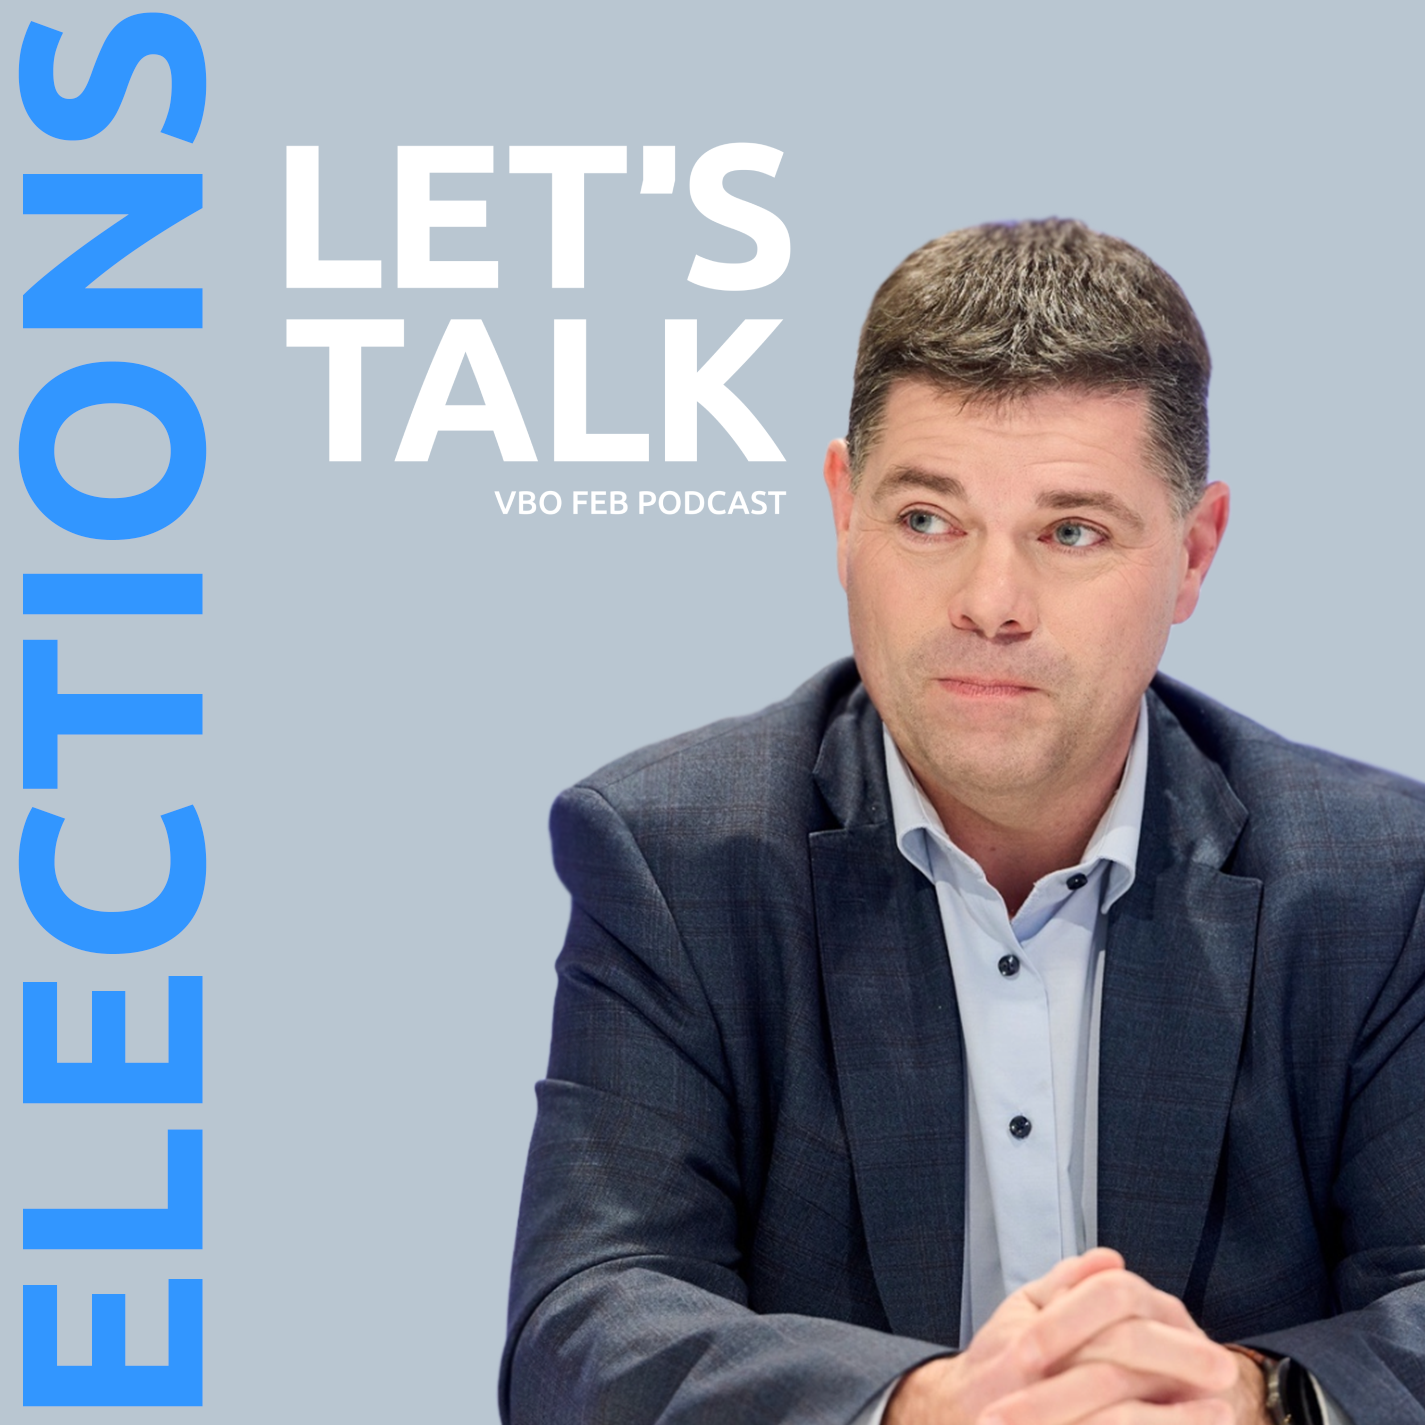 Let's Talk Elections met Tom Ongena (Open Vld)